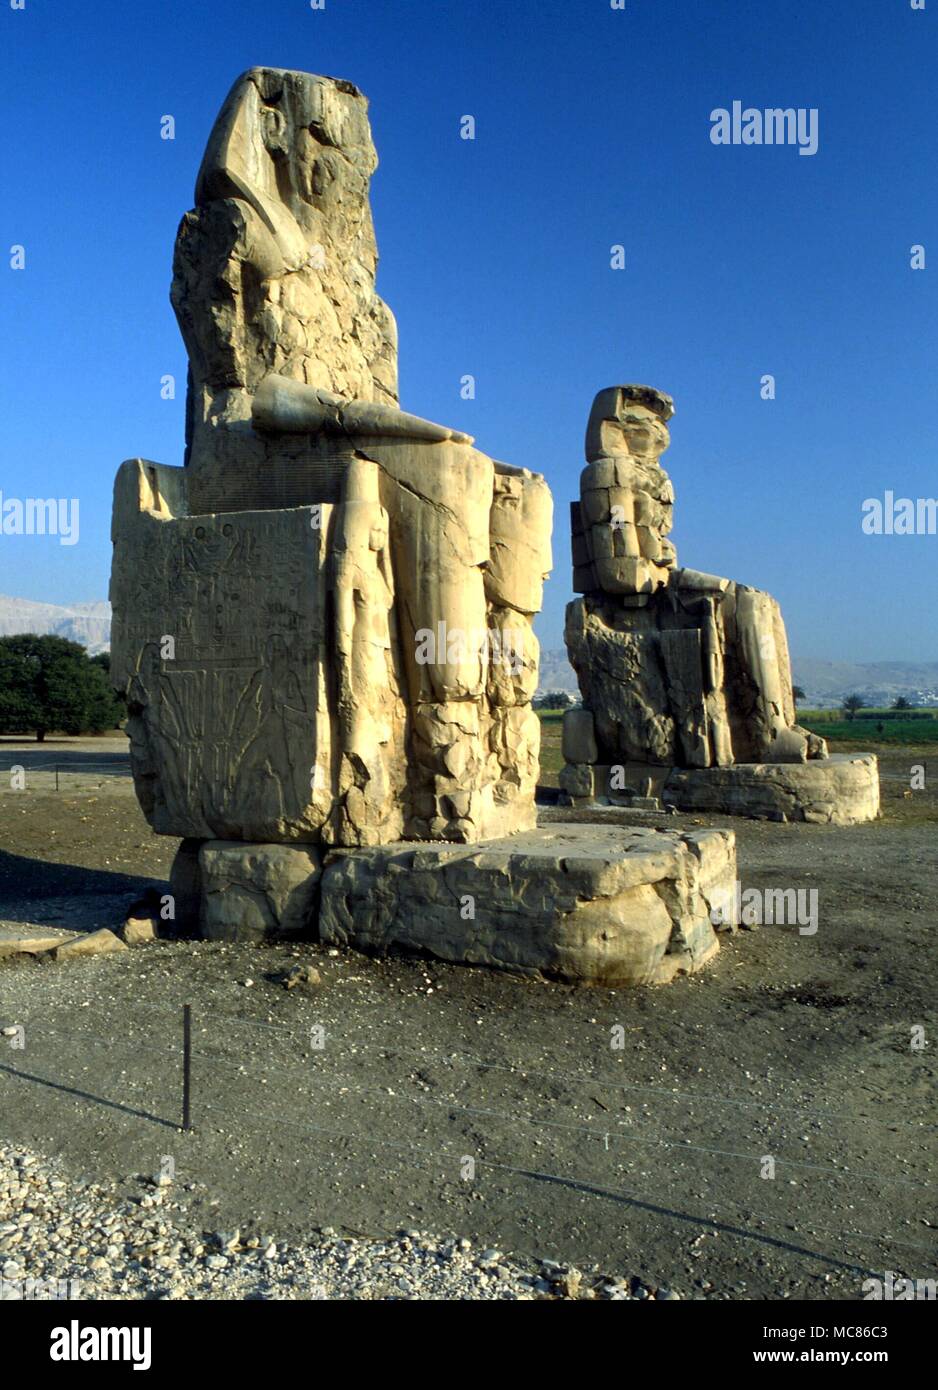 Mito - Egipto Colosos de Memnon las estatuas gigantes de Memnon, uno de los cuales se suponía que iba a saludar al sol naciente con la canción. De hecho, estos son los únicos restos que quedan de un inmenso templo, del cual eran los guardianes del portal Foto de stock